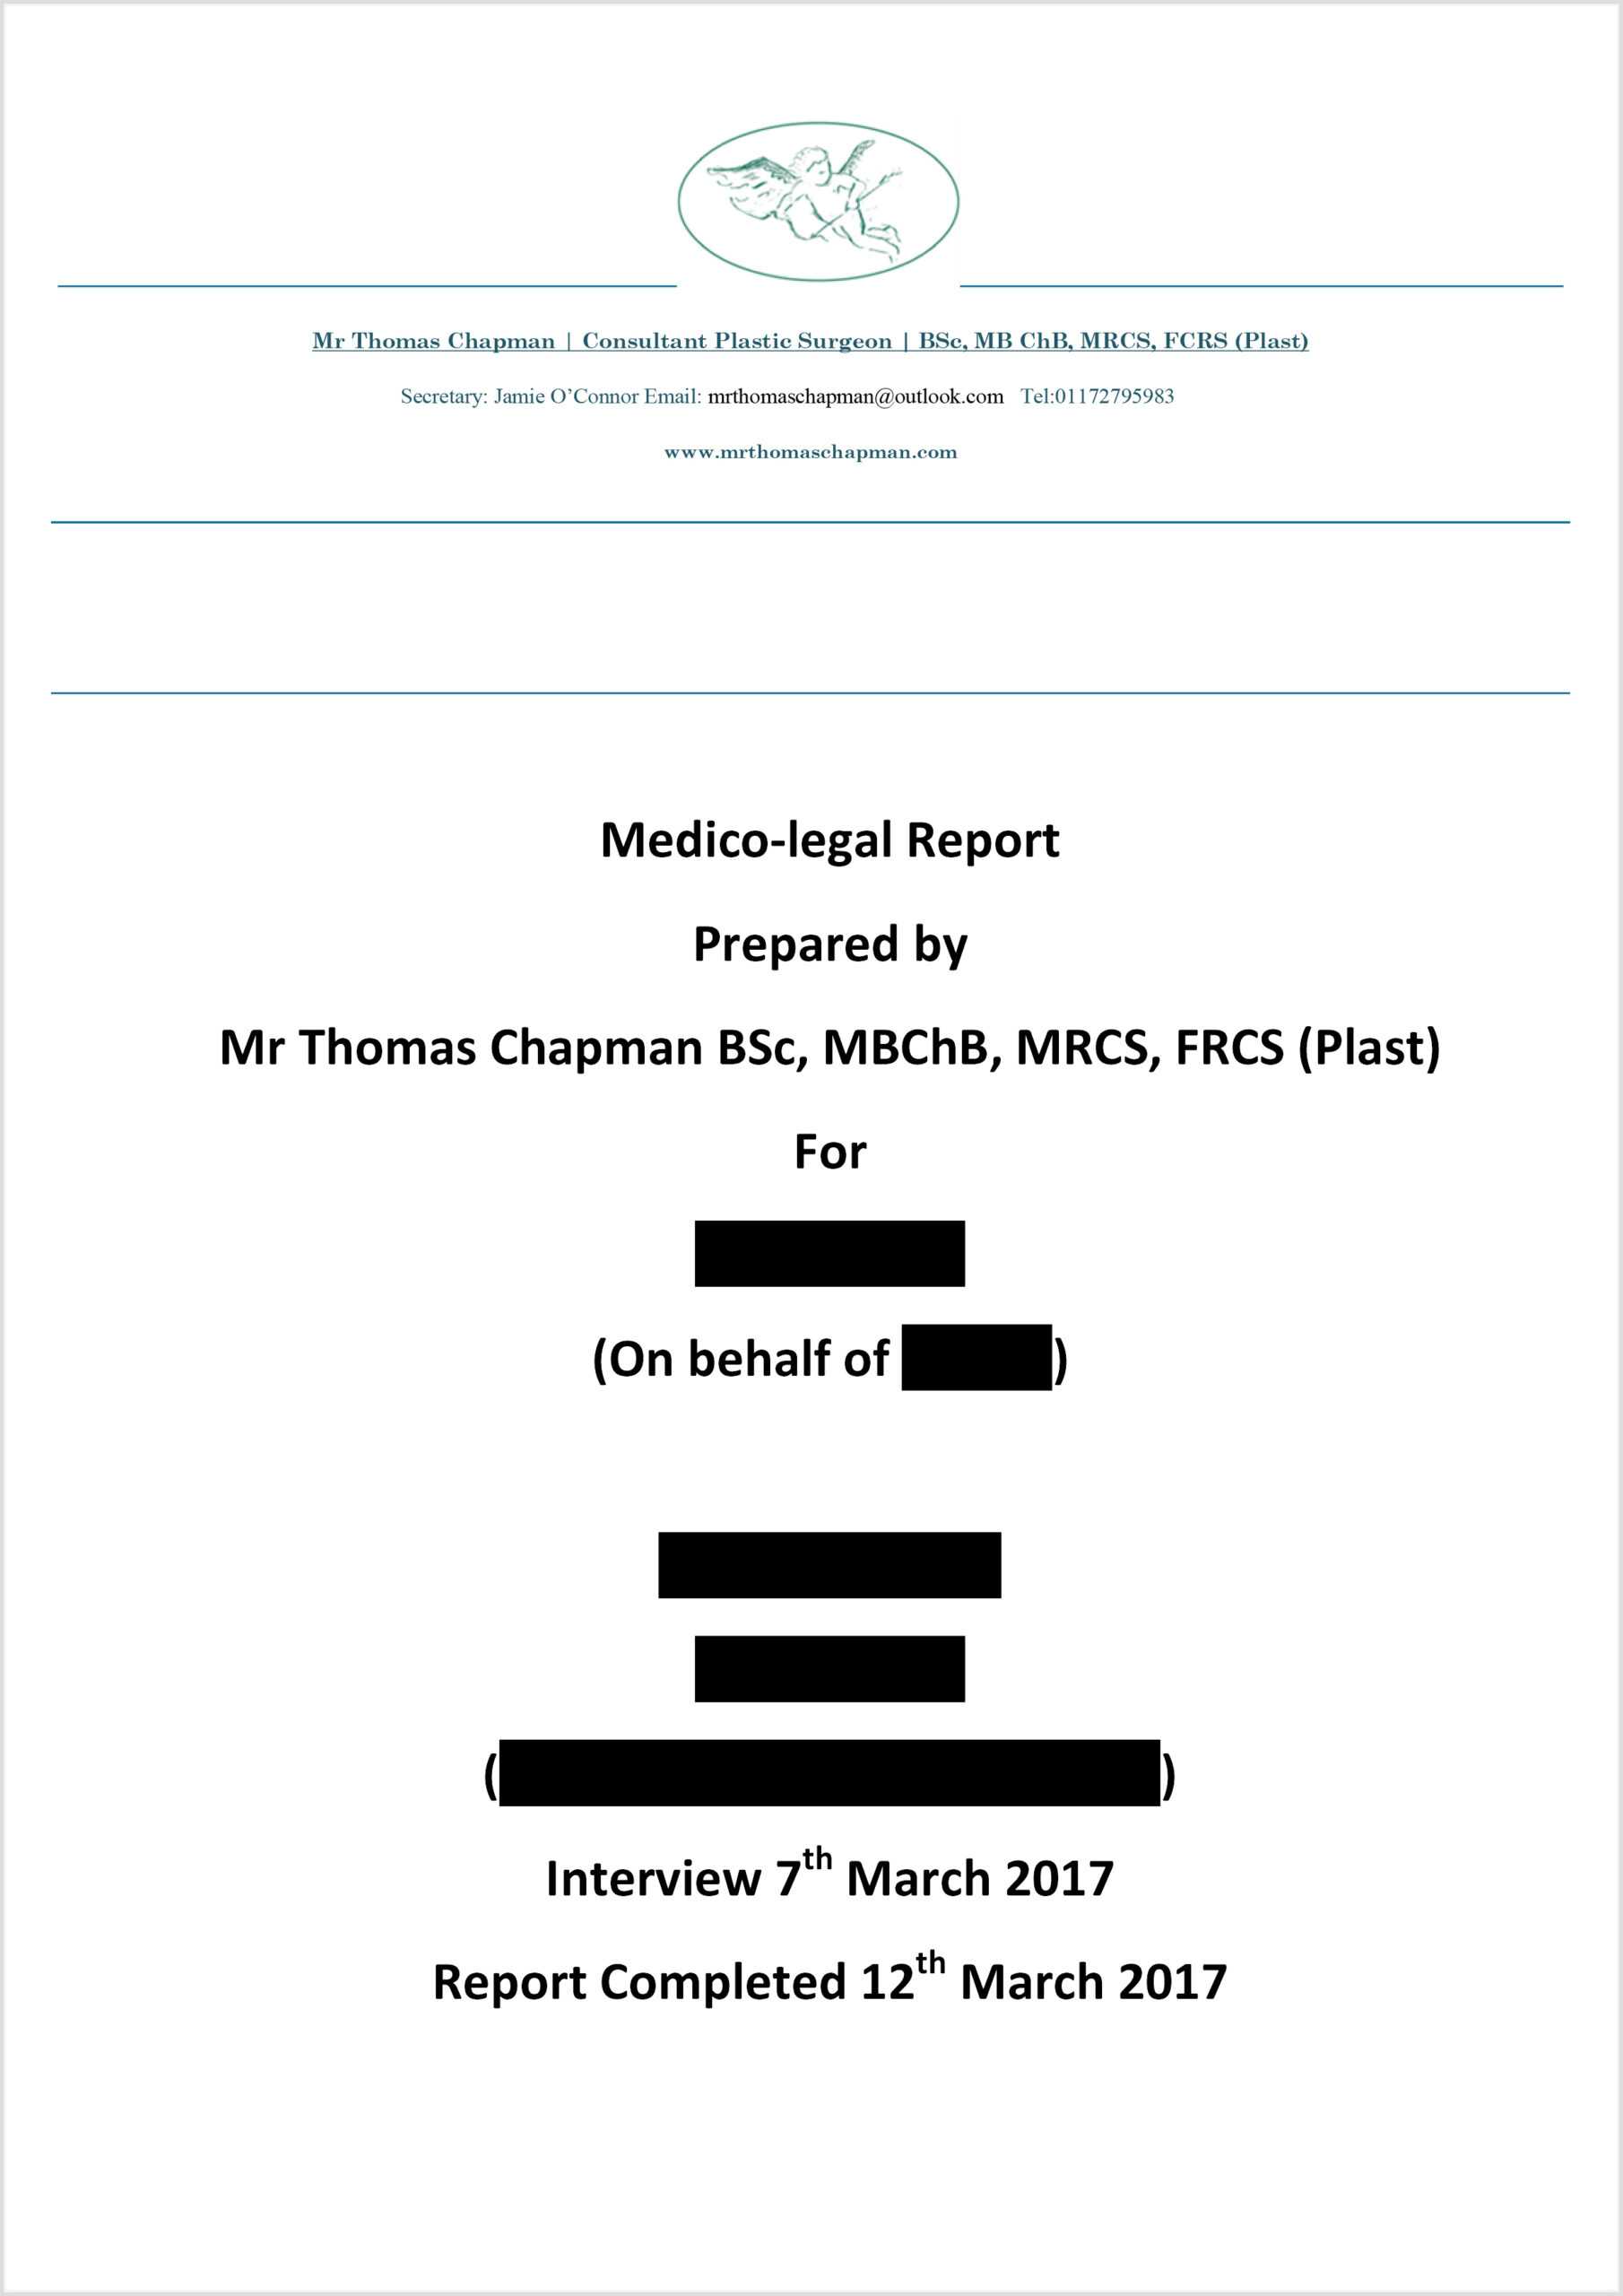 Medicolegal Reporting - Mr Thomas Chapman With Regard To Medical Legal Report Template